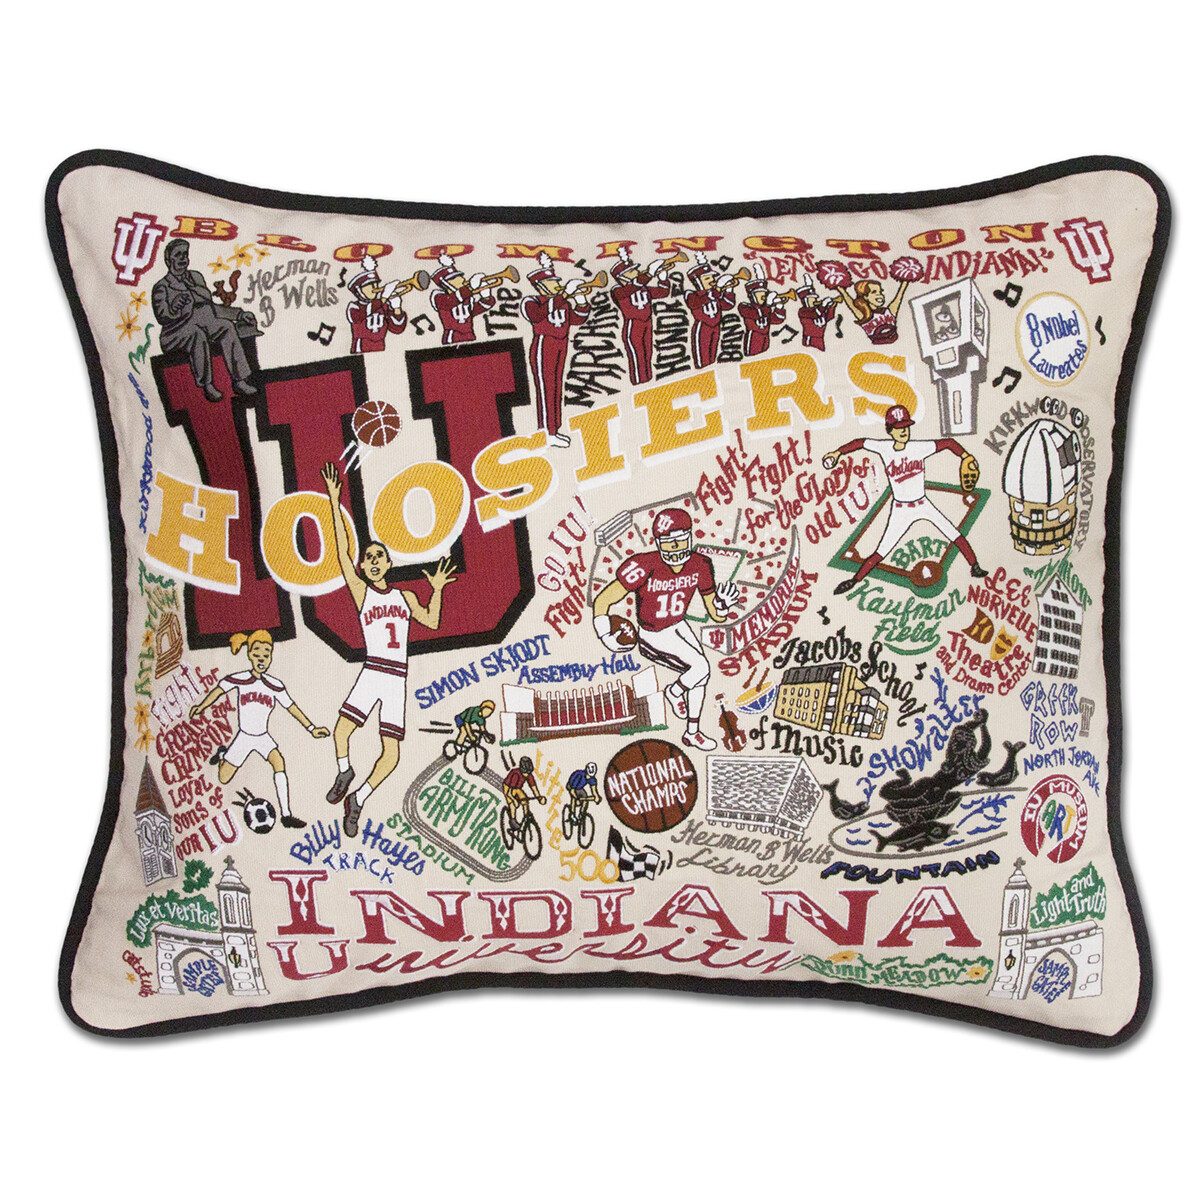 Indiana University pillow